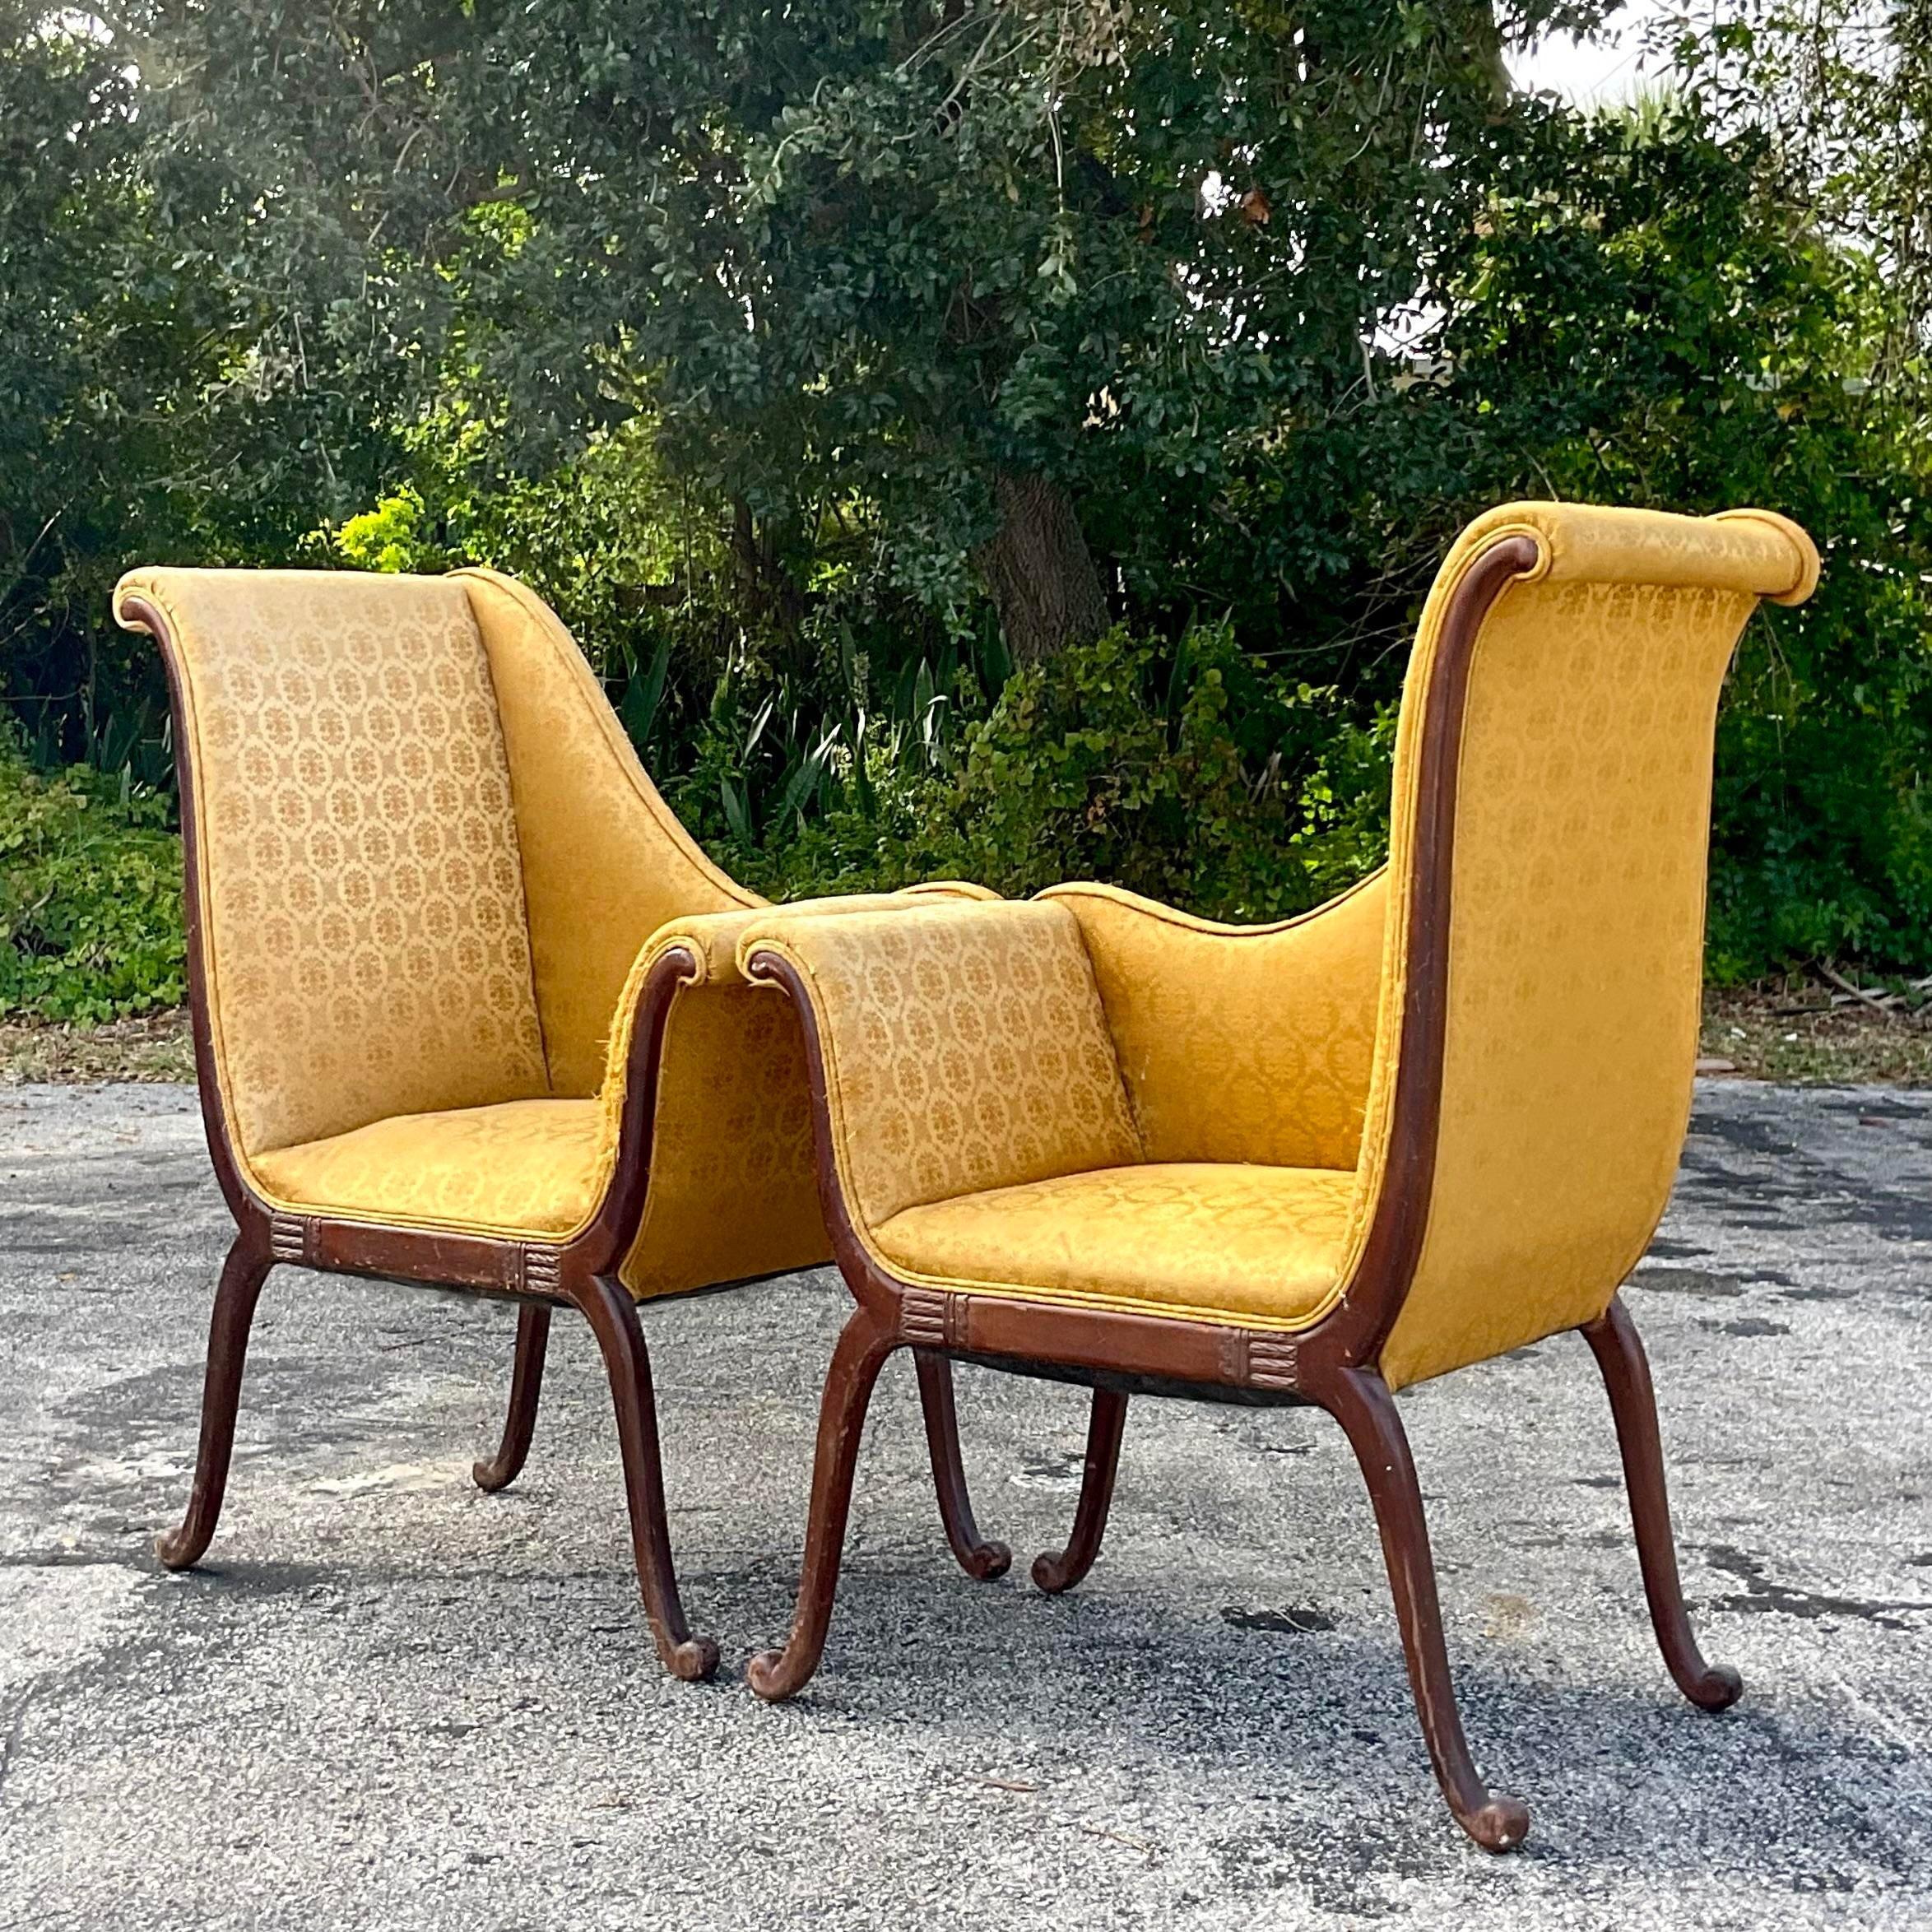 Eine fantastische Vintage Regency Lounge Stühle. Ein schickes Design von Parker Deux mit schönen handgeschnitzten Details. Diese Stühle sind strukturell gut, müssen aber neu gepolstert werden. Aber sobald sie neu gestaltet sind, werden sie zu einem